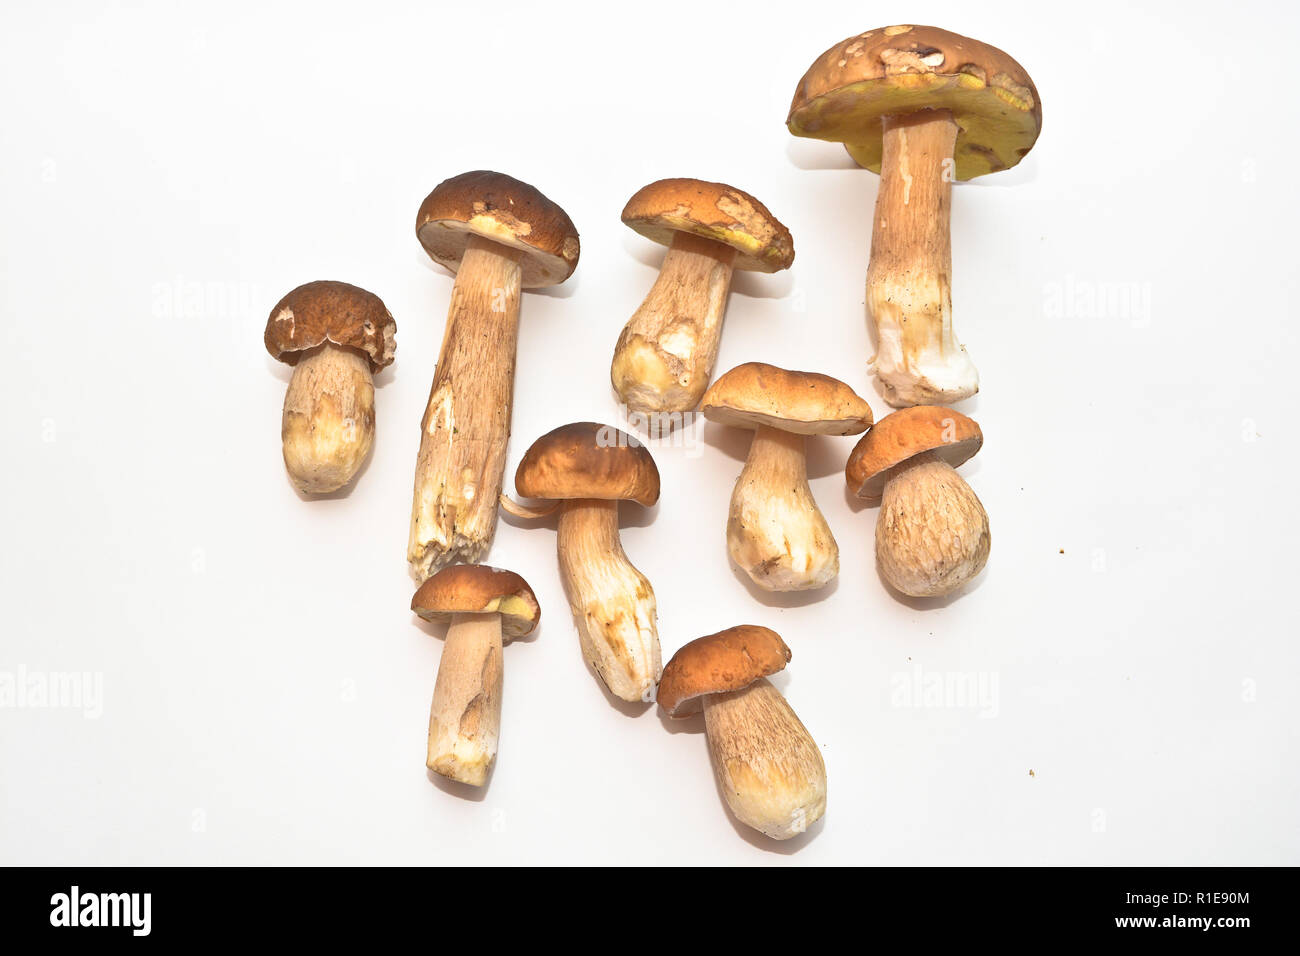 White mushroom (Boletus edulis). Group of edible mushrooms on white background. Stock Photo